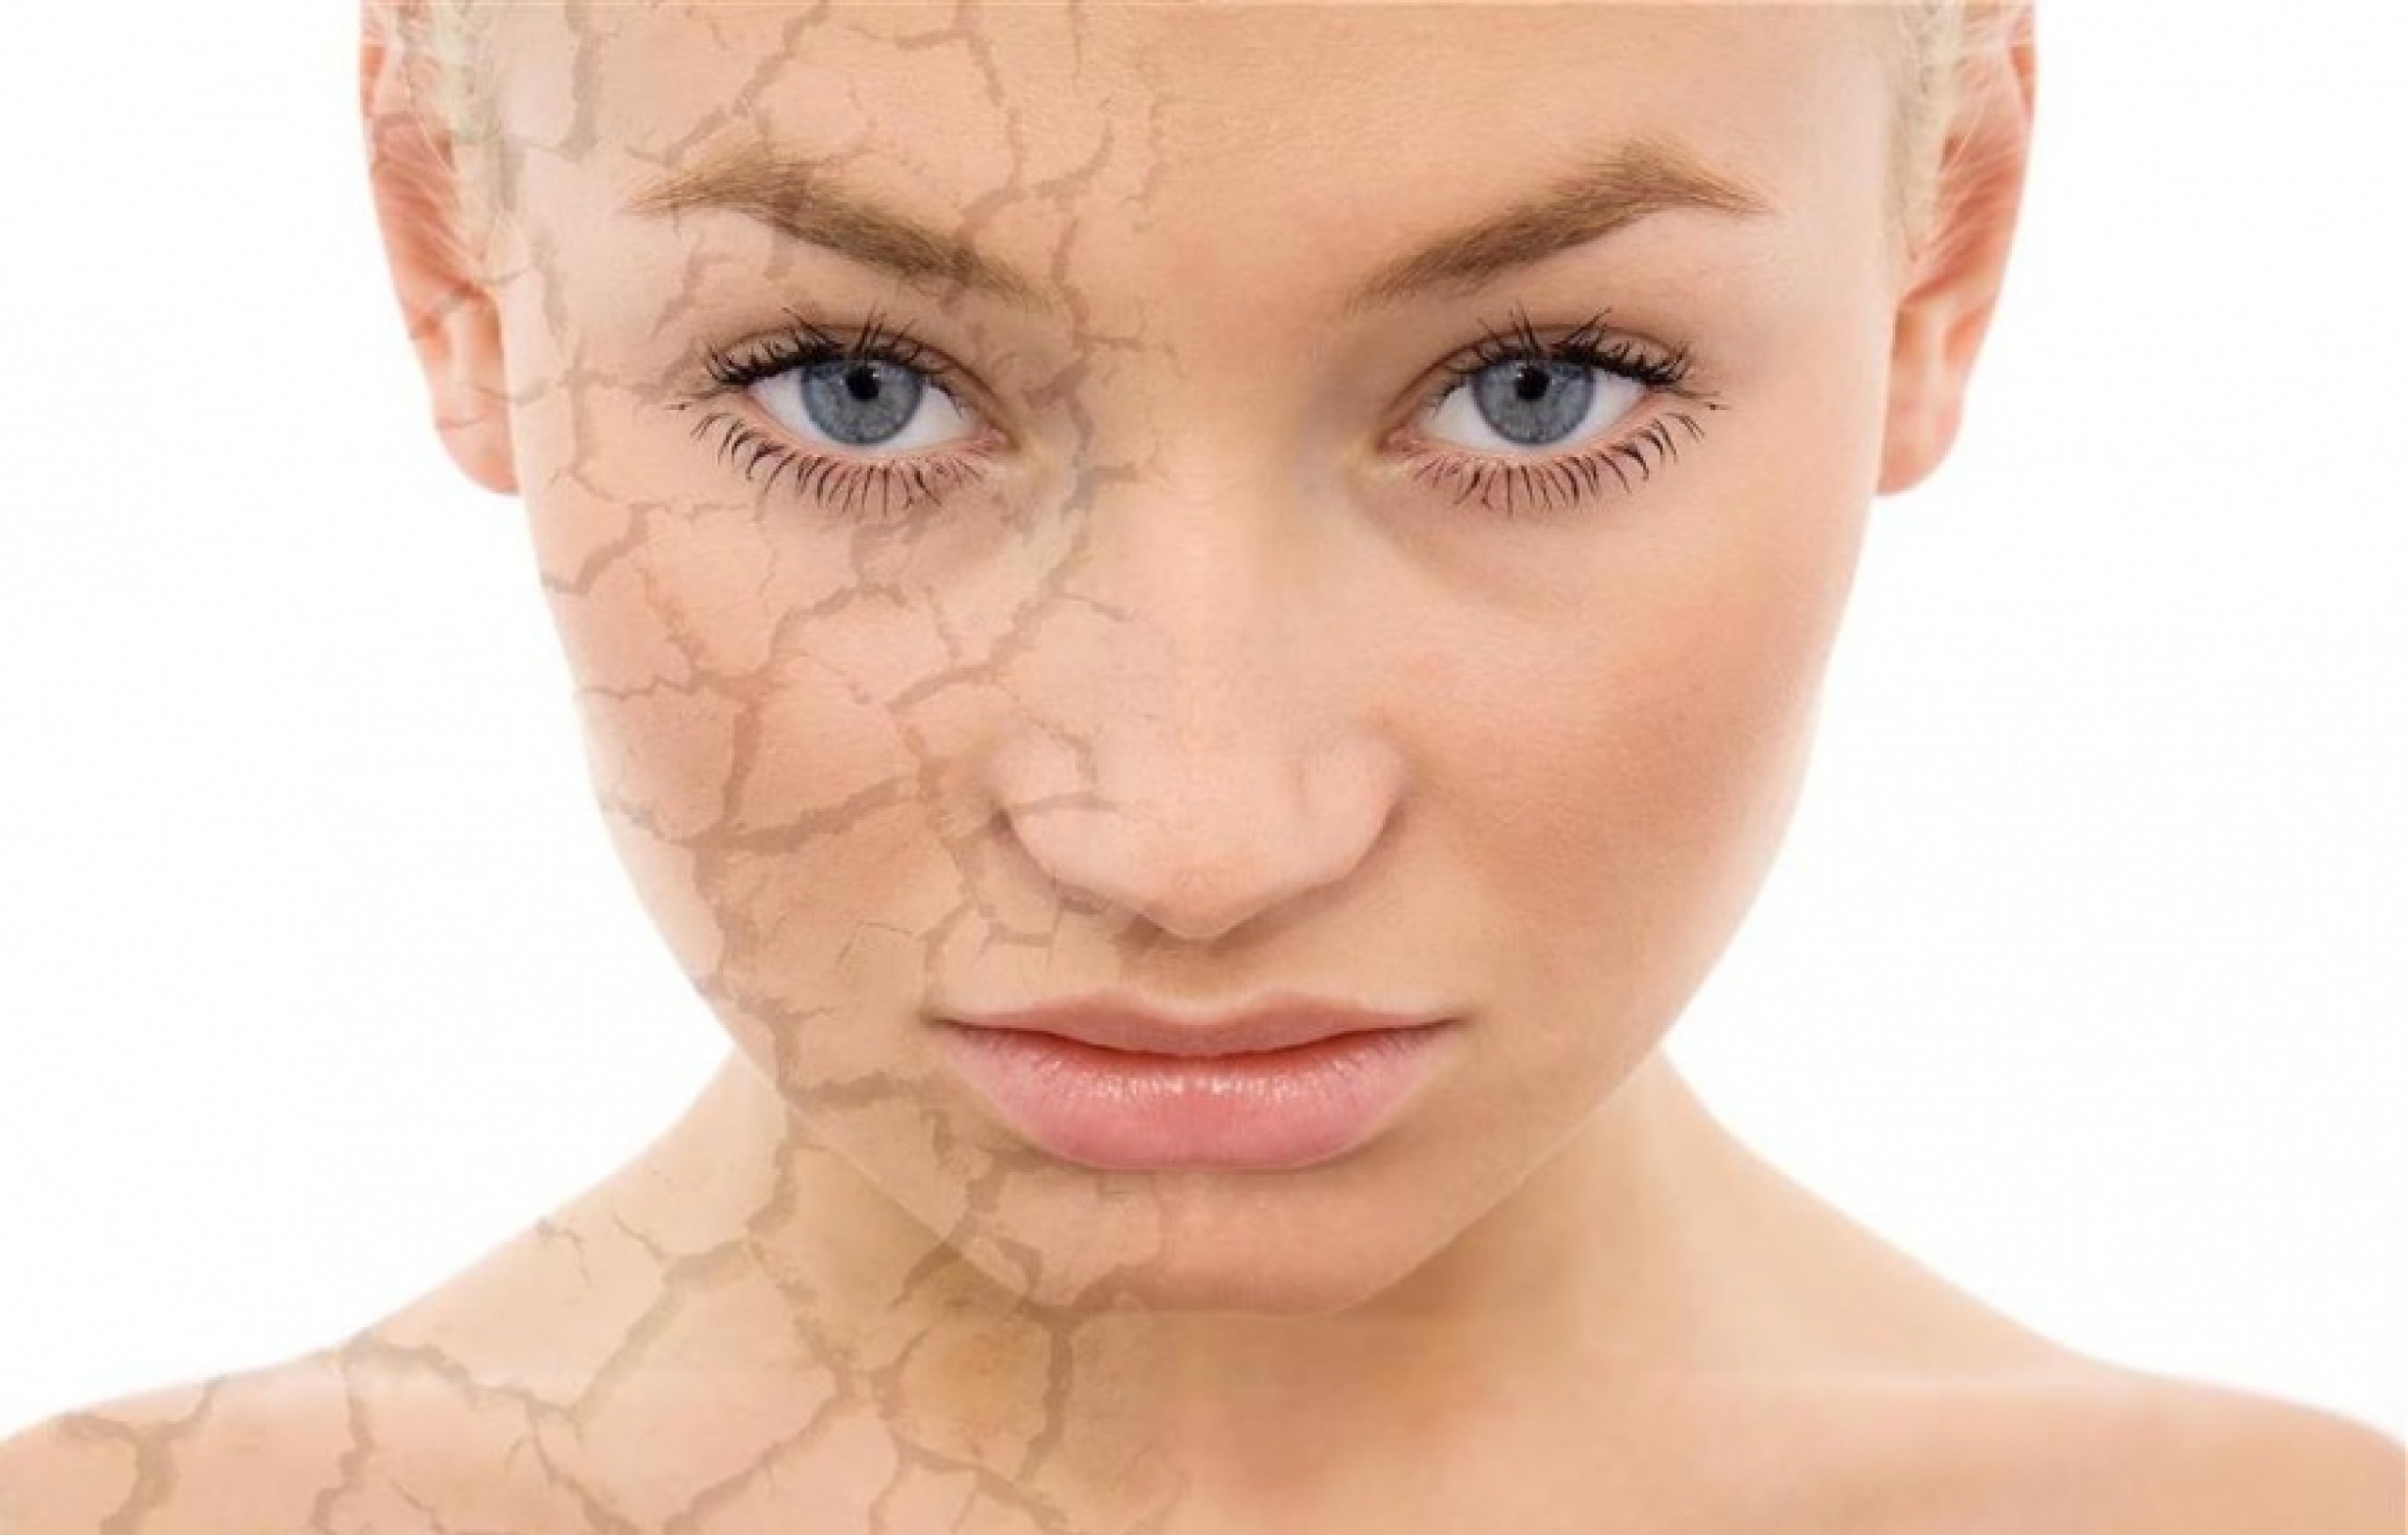 Пигментные пятна на лице: причины и лечение